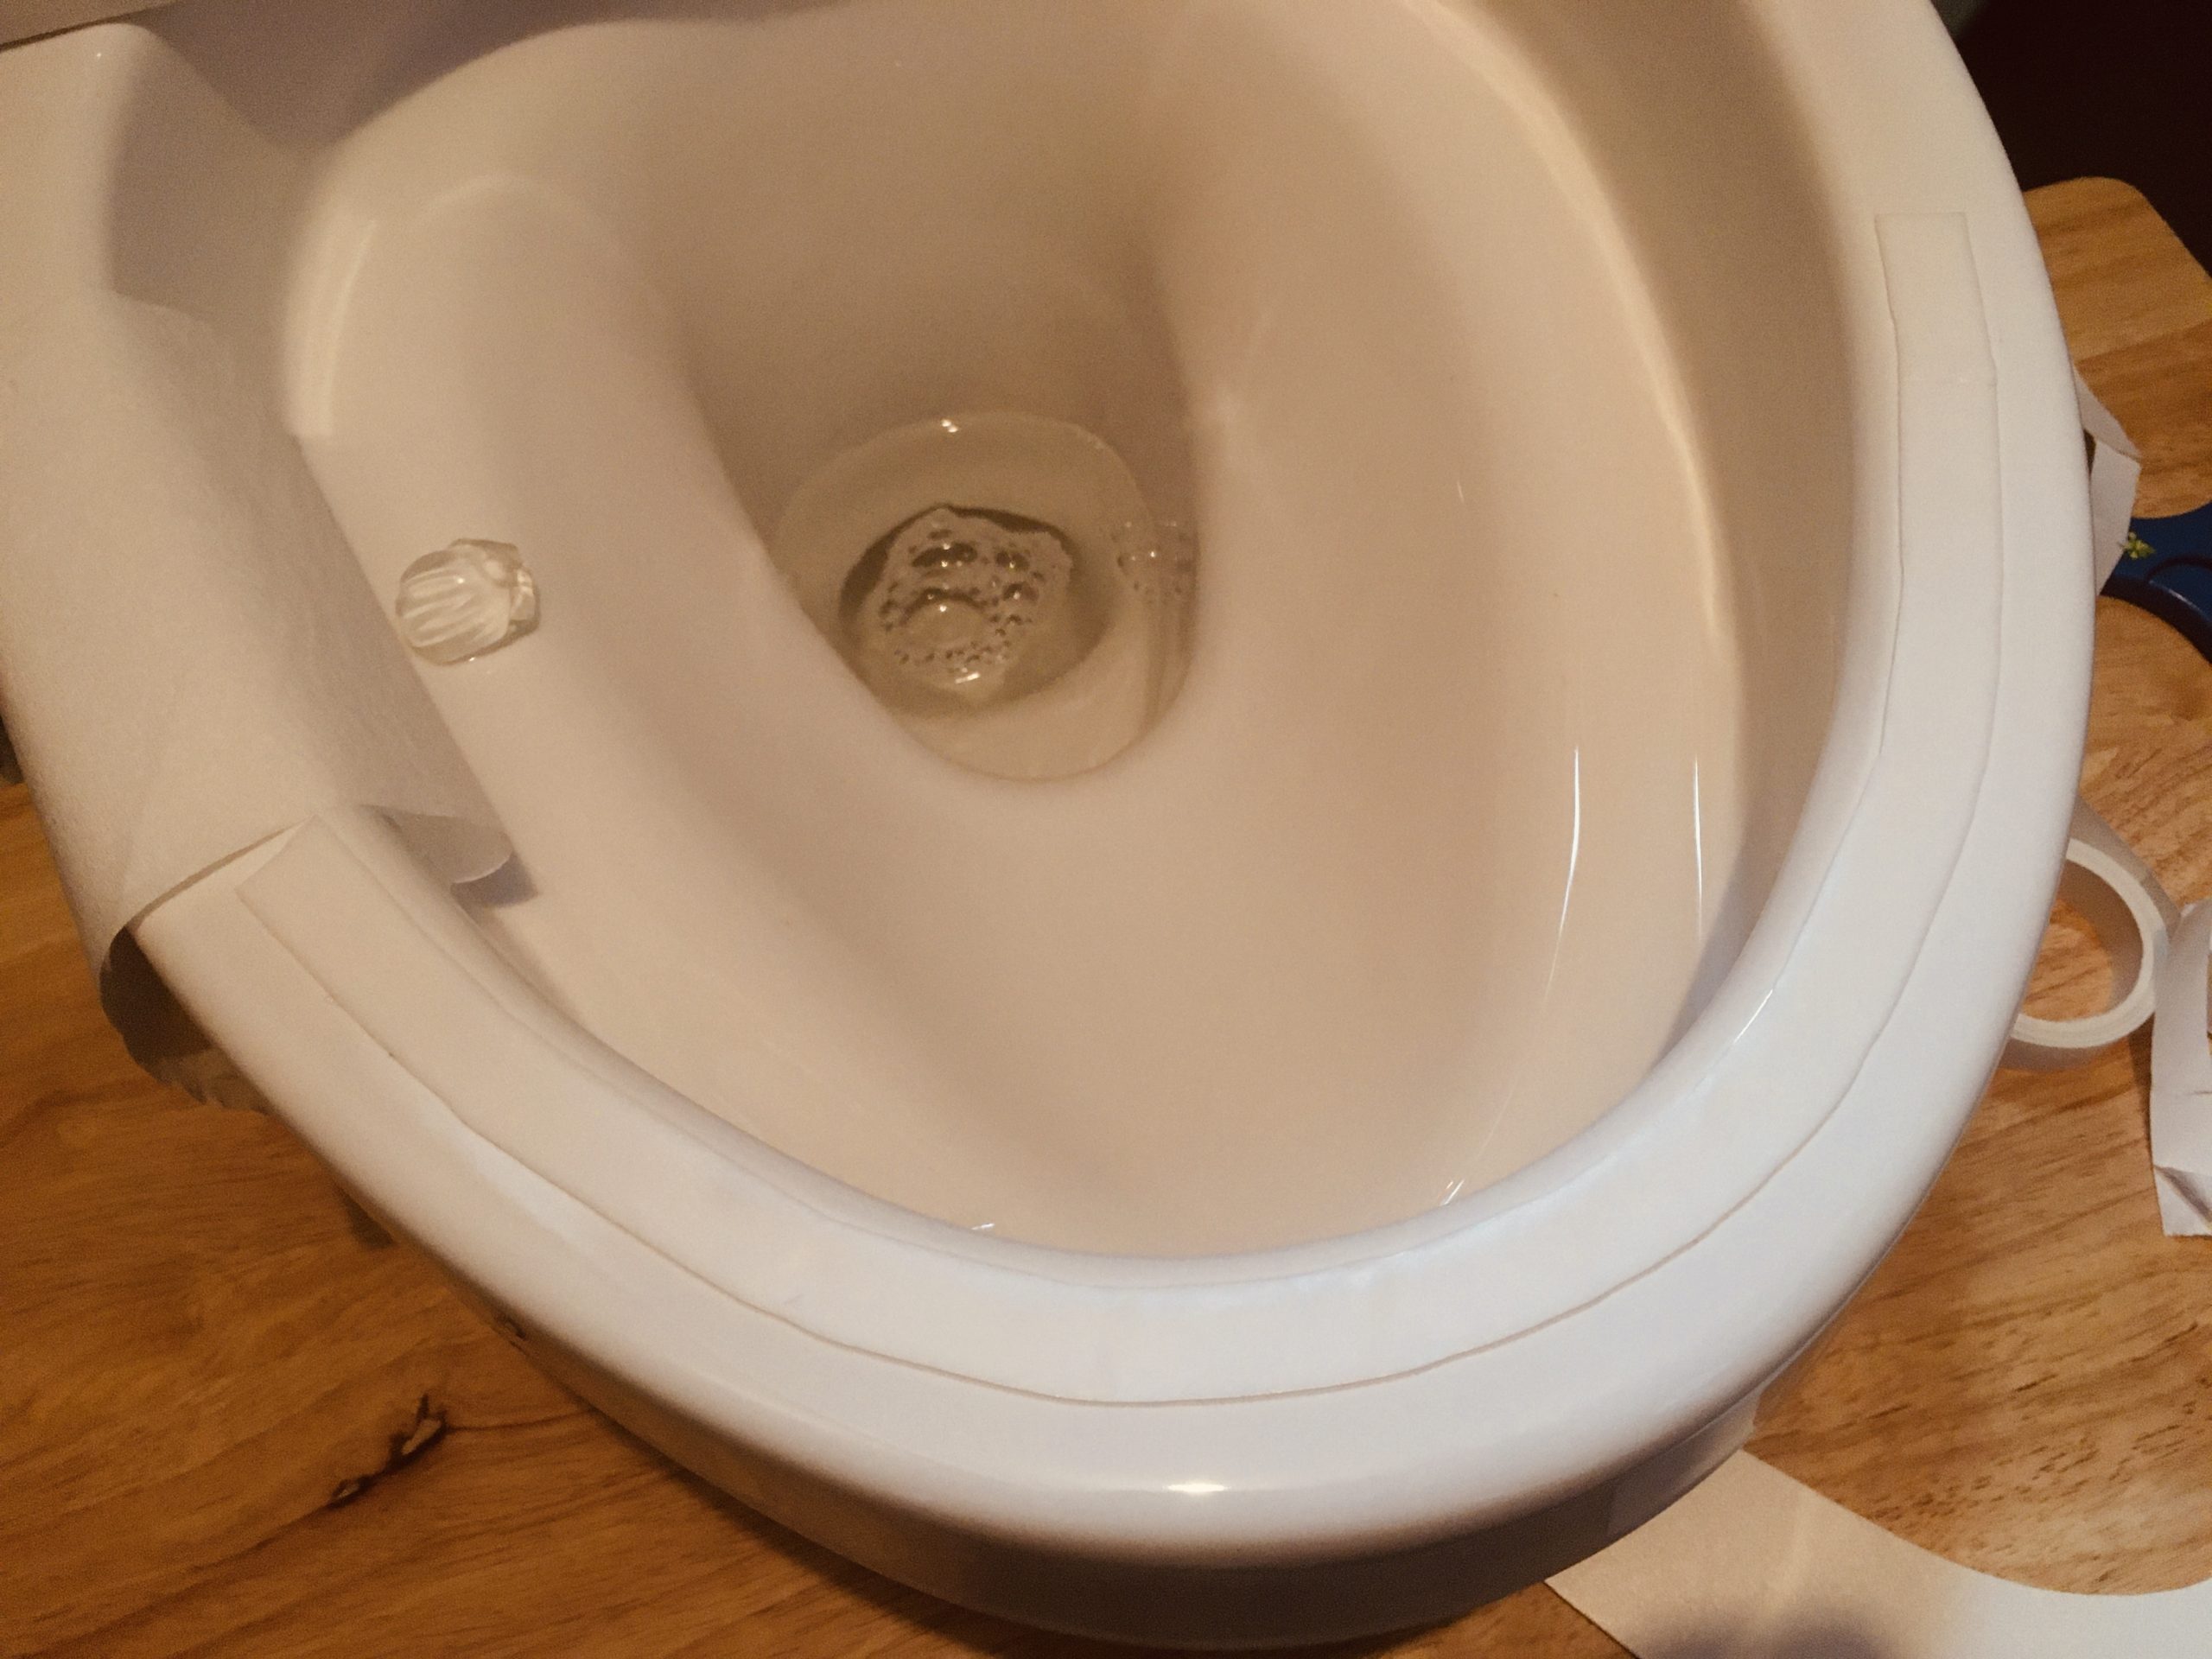 フチなしトイレの跳ね返り汚れを根本的に解消する方法[DIY] 虹や